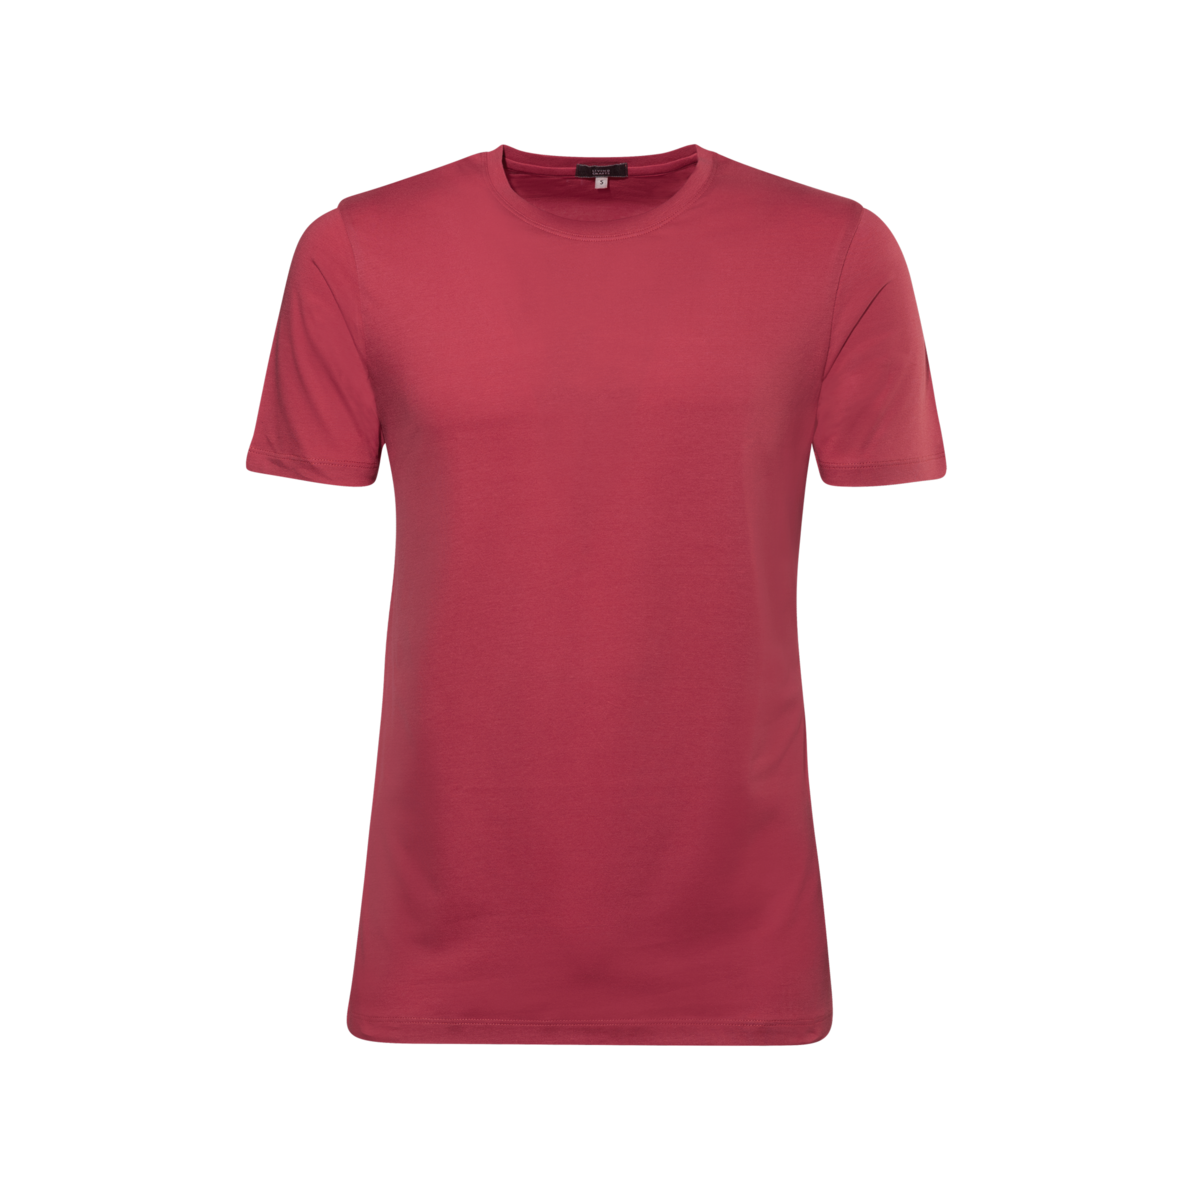 Red T-shirt, ILKO